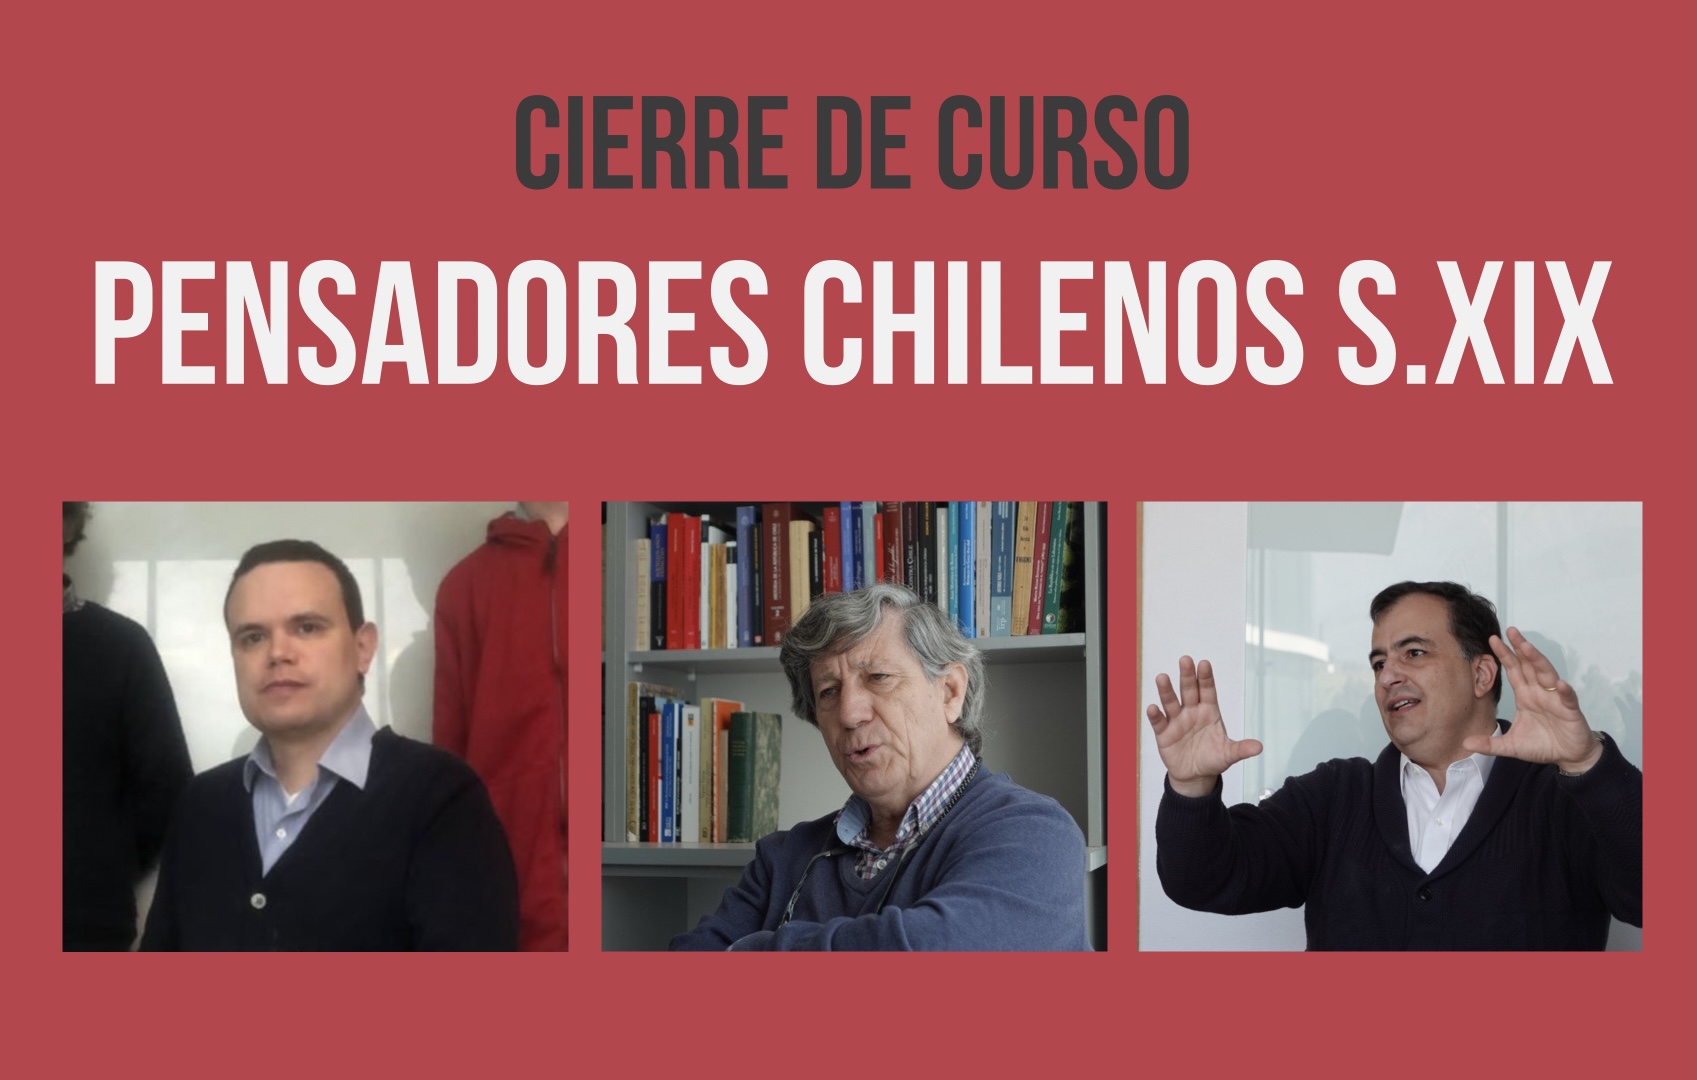 Cierre del curso “Pensadores chilenos fundamentales del siglo XIX” [30.09.2021]